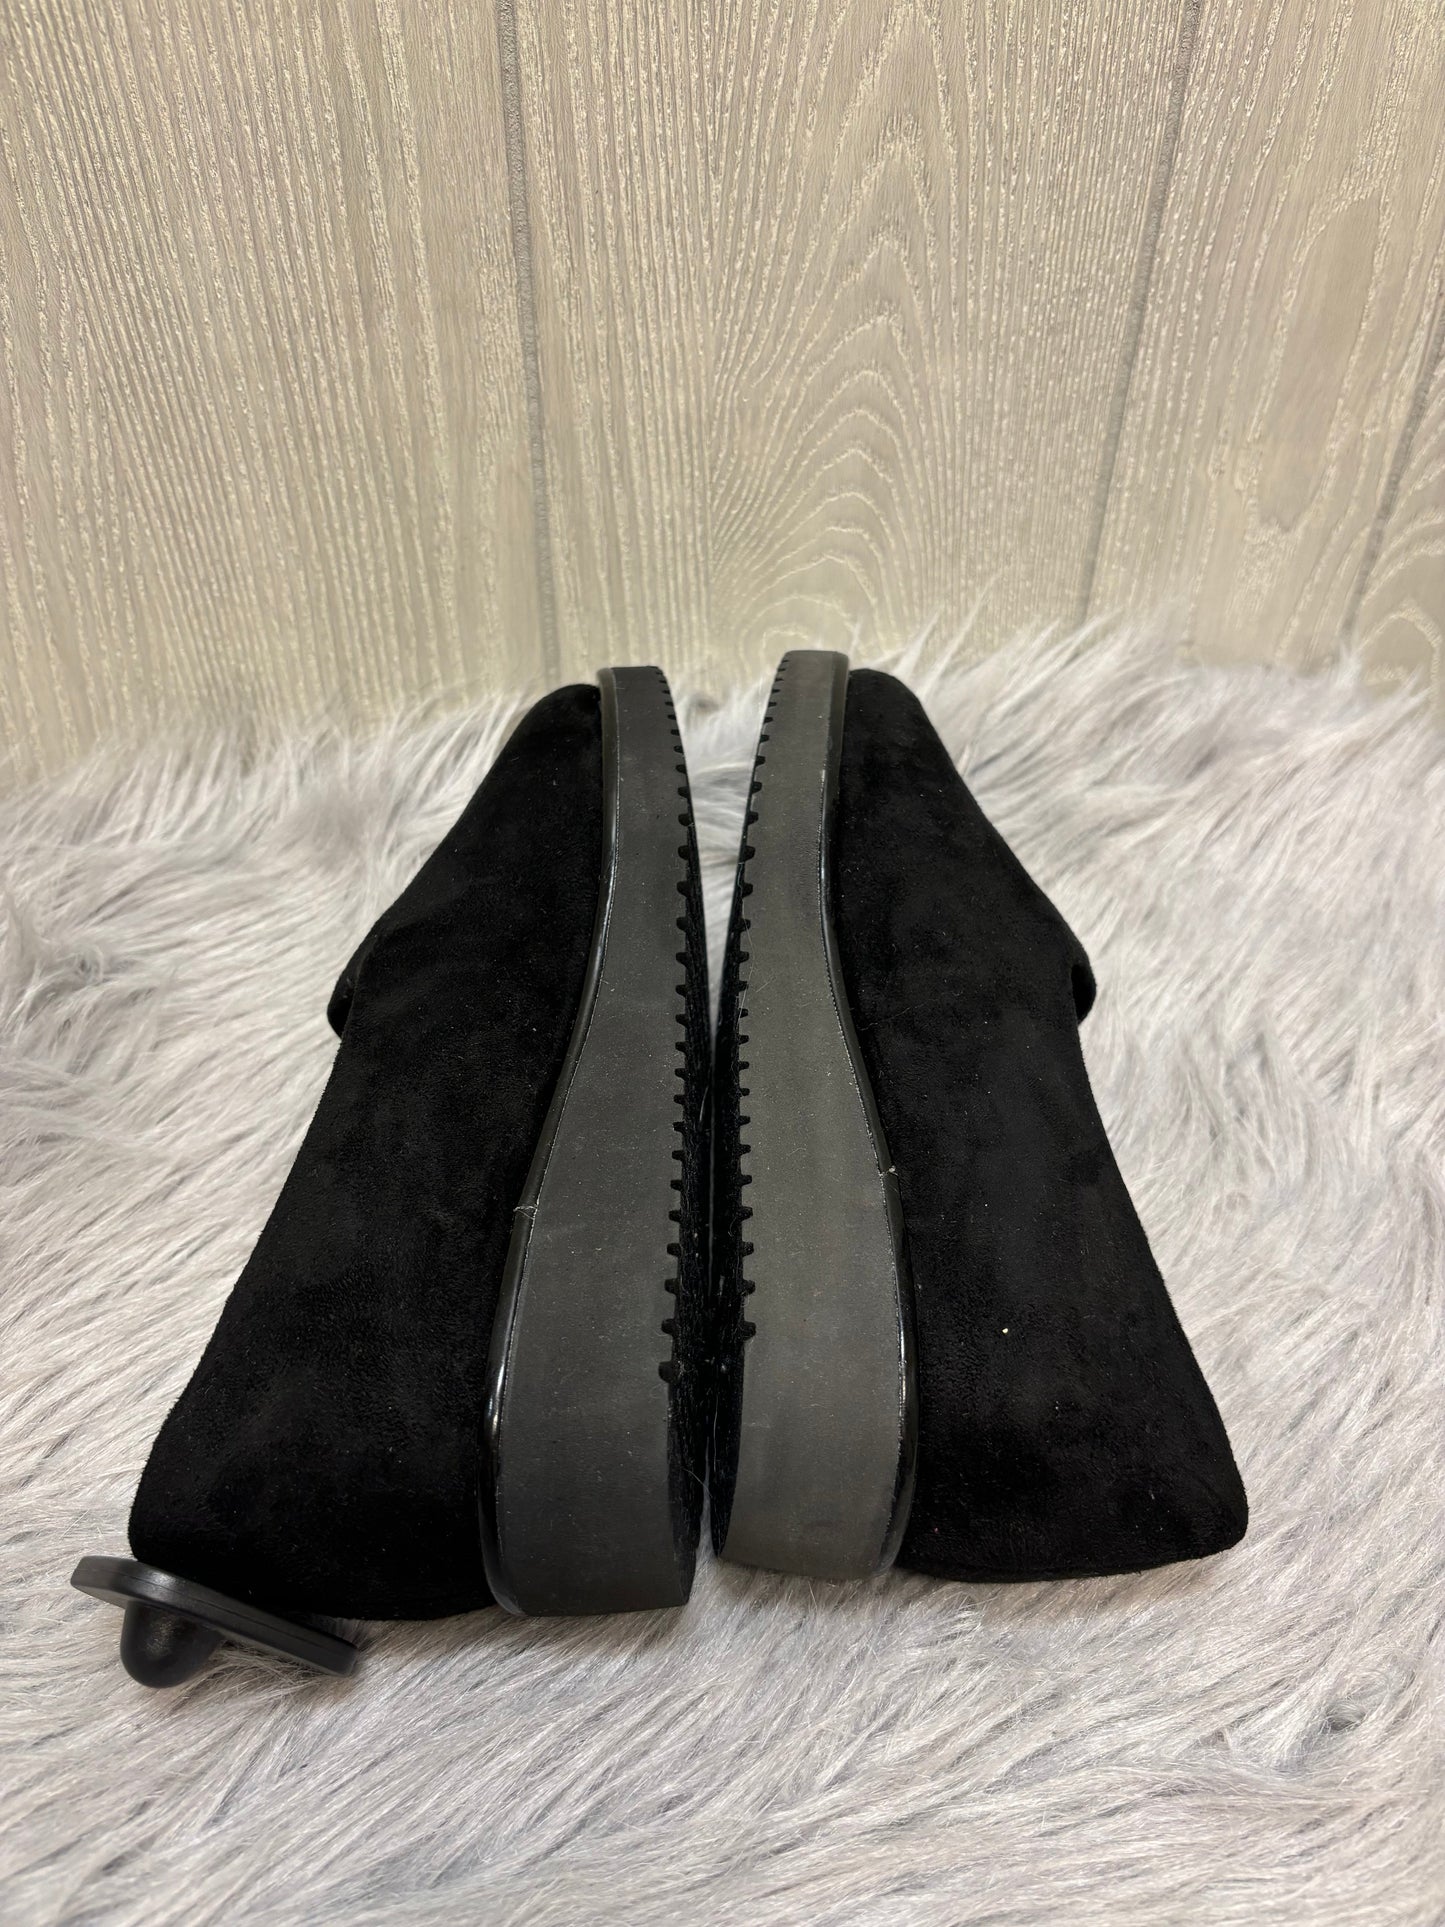 Black & Brown Sandals Heels Block Cmc, Size 7